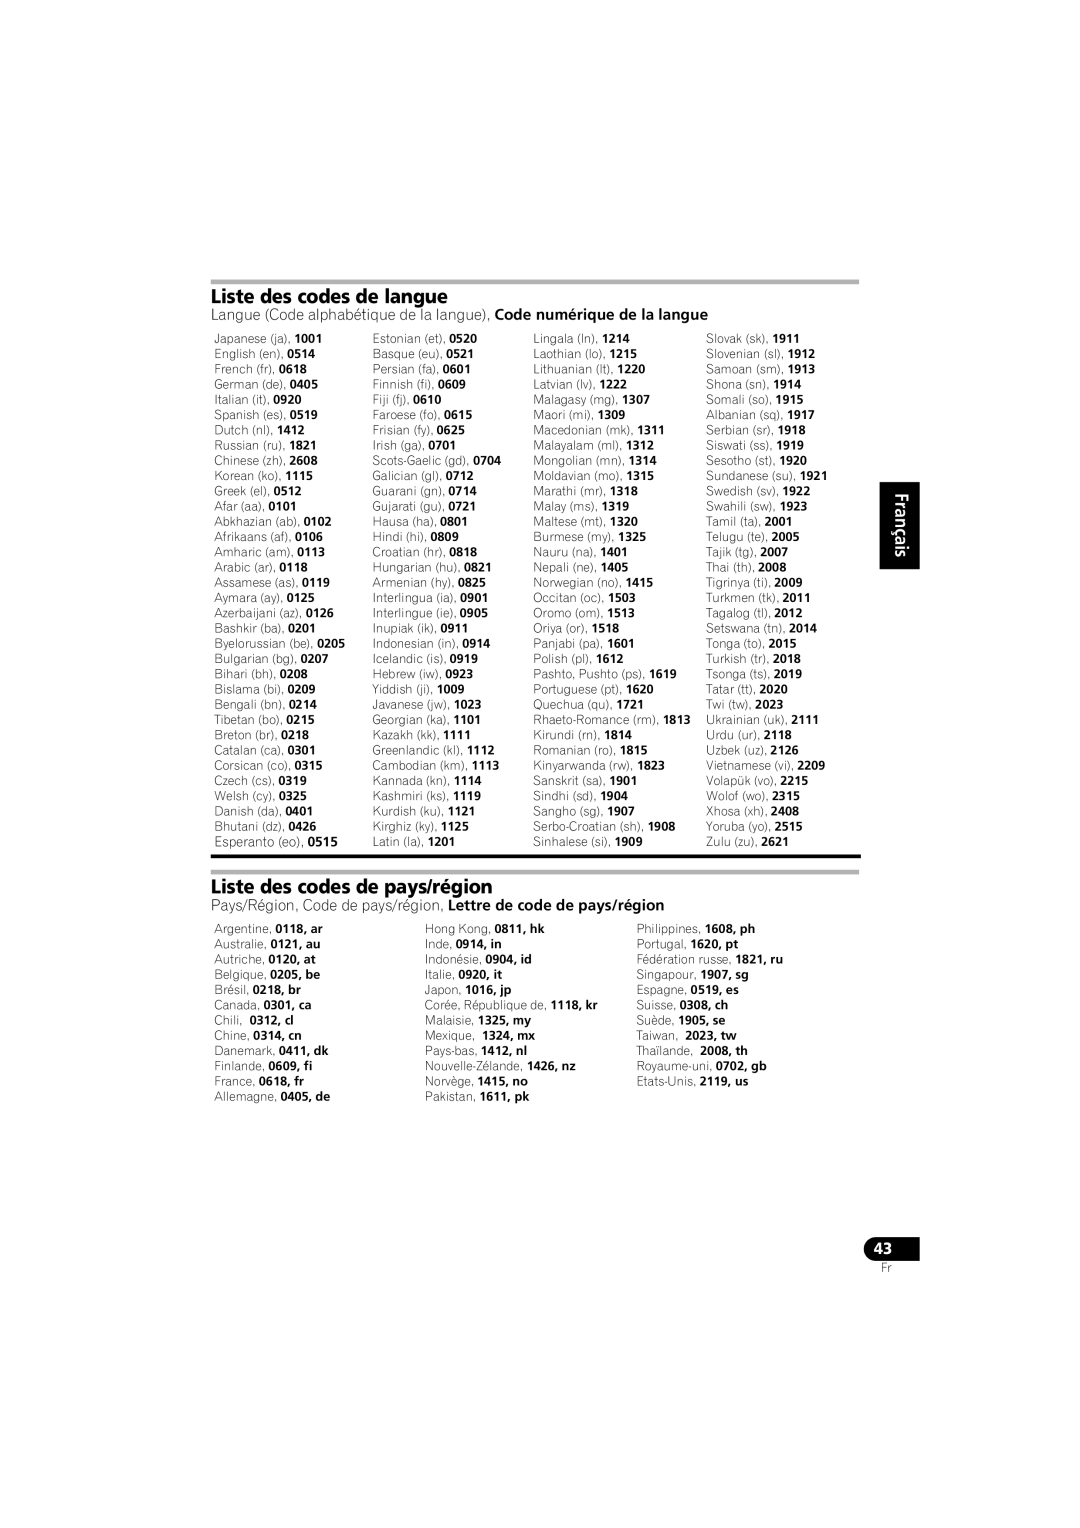 Pioneer HTZ-360DV manual Liste des codes de langue, Liste des codes de pays/région, English Français 